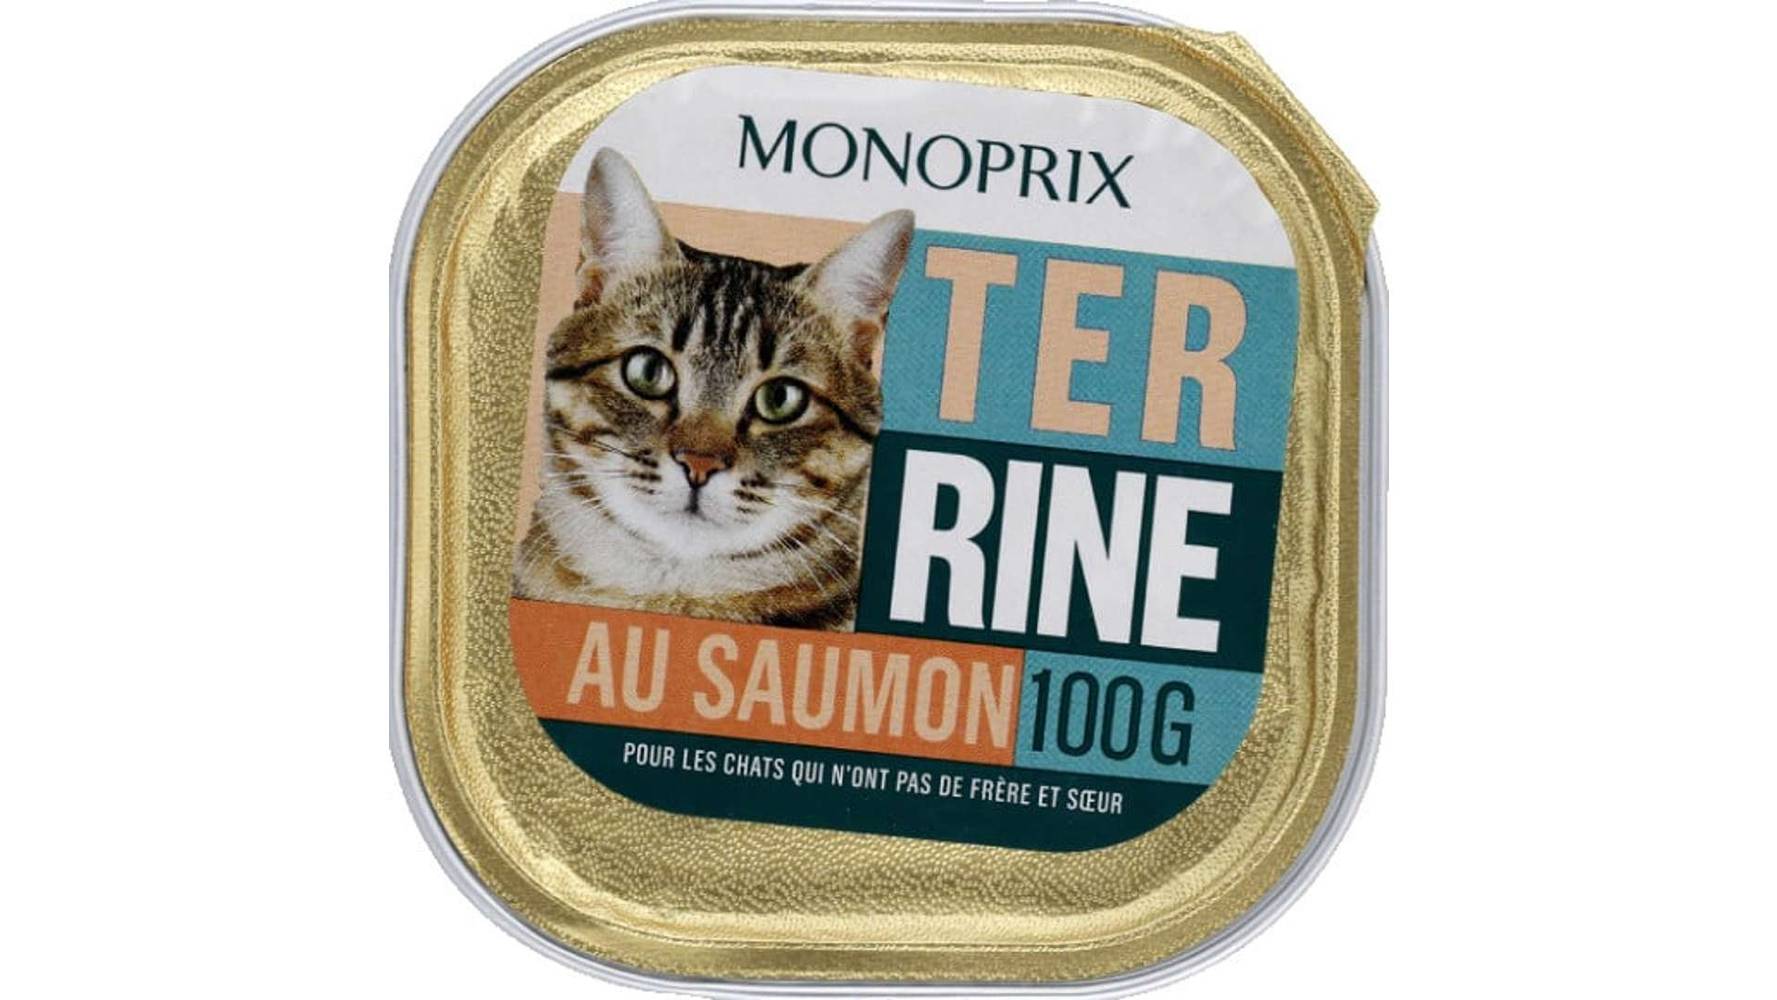 Monoprix Terrine au saumon pour chat La barquette de 100g